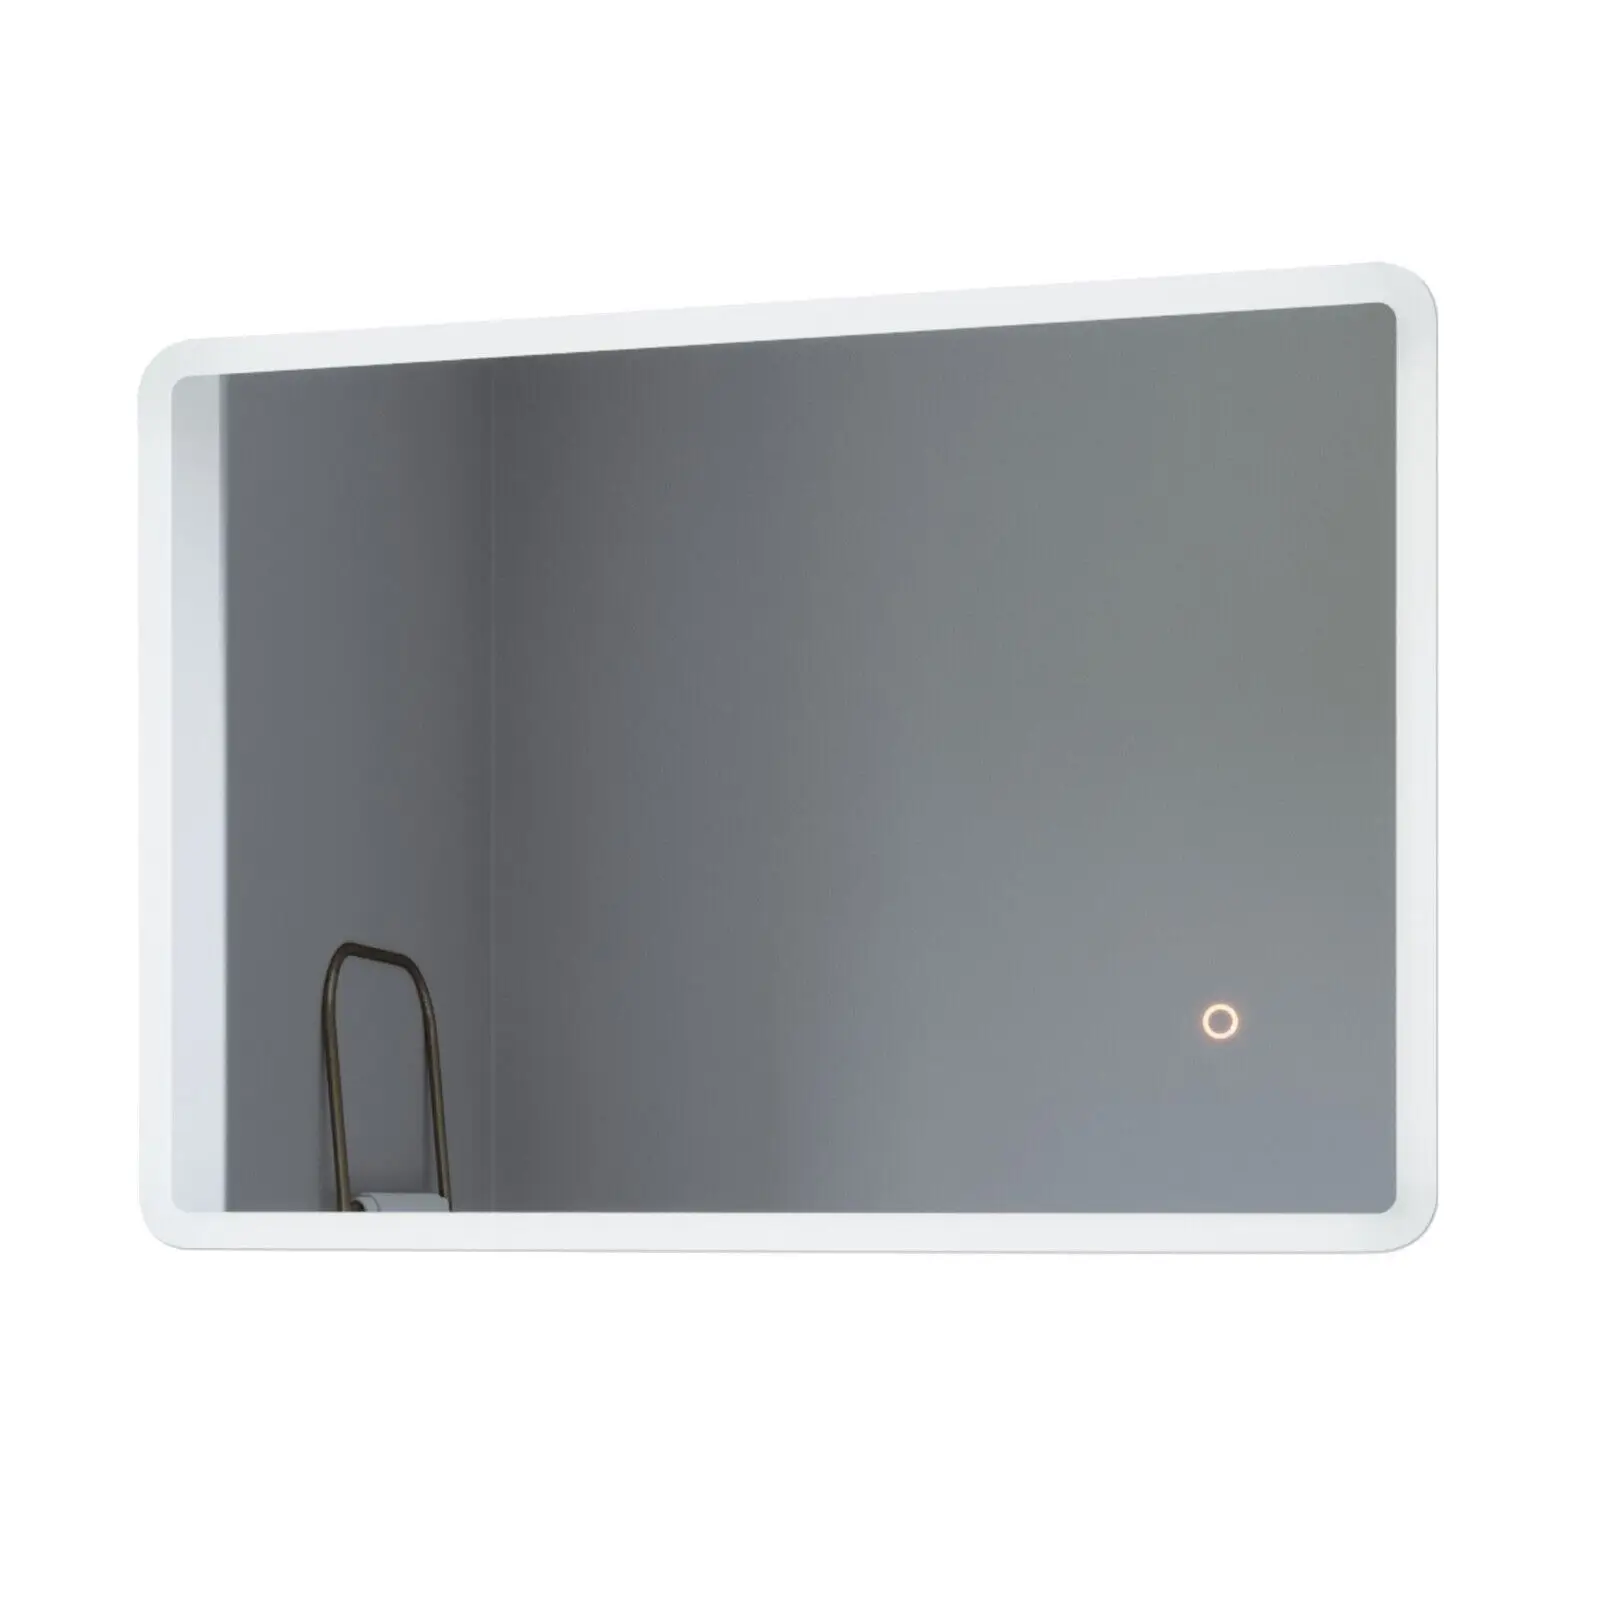 LED Spiegel Badspiegel mit Beleuchtung